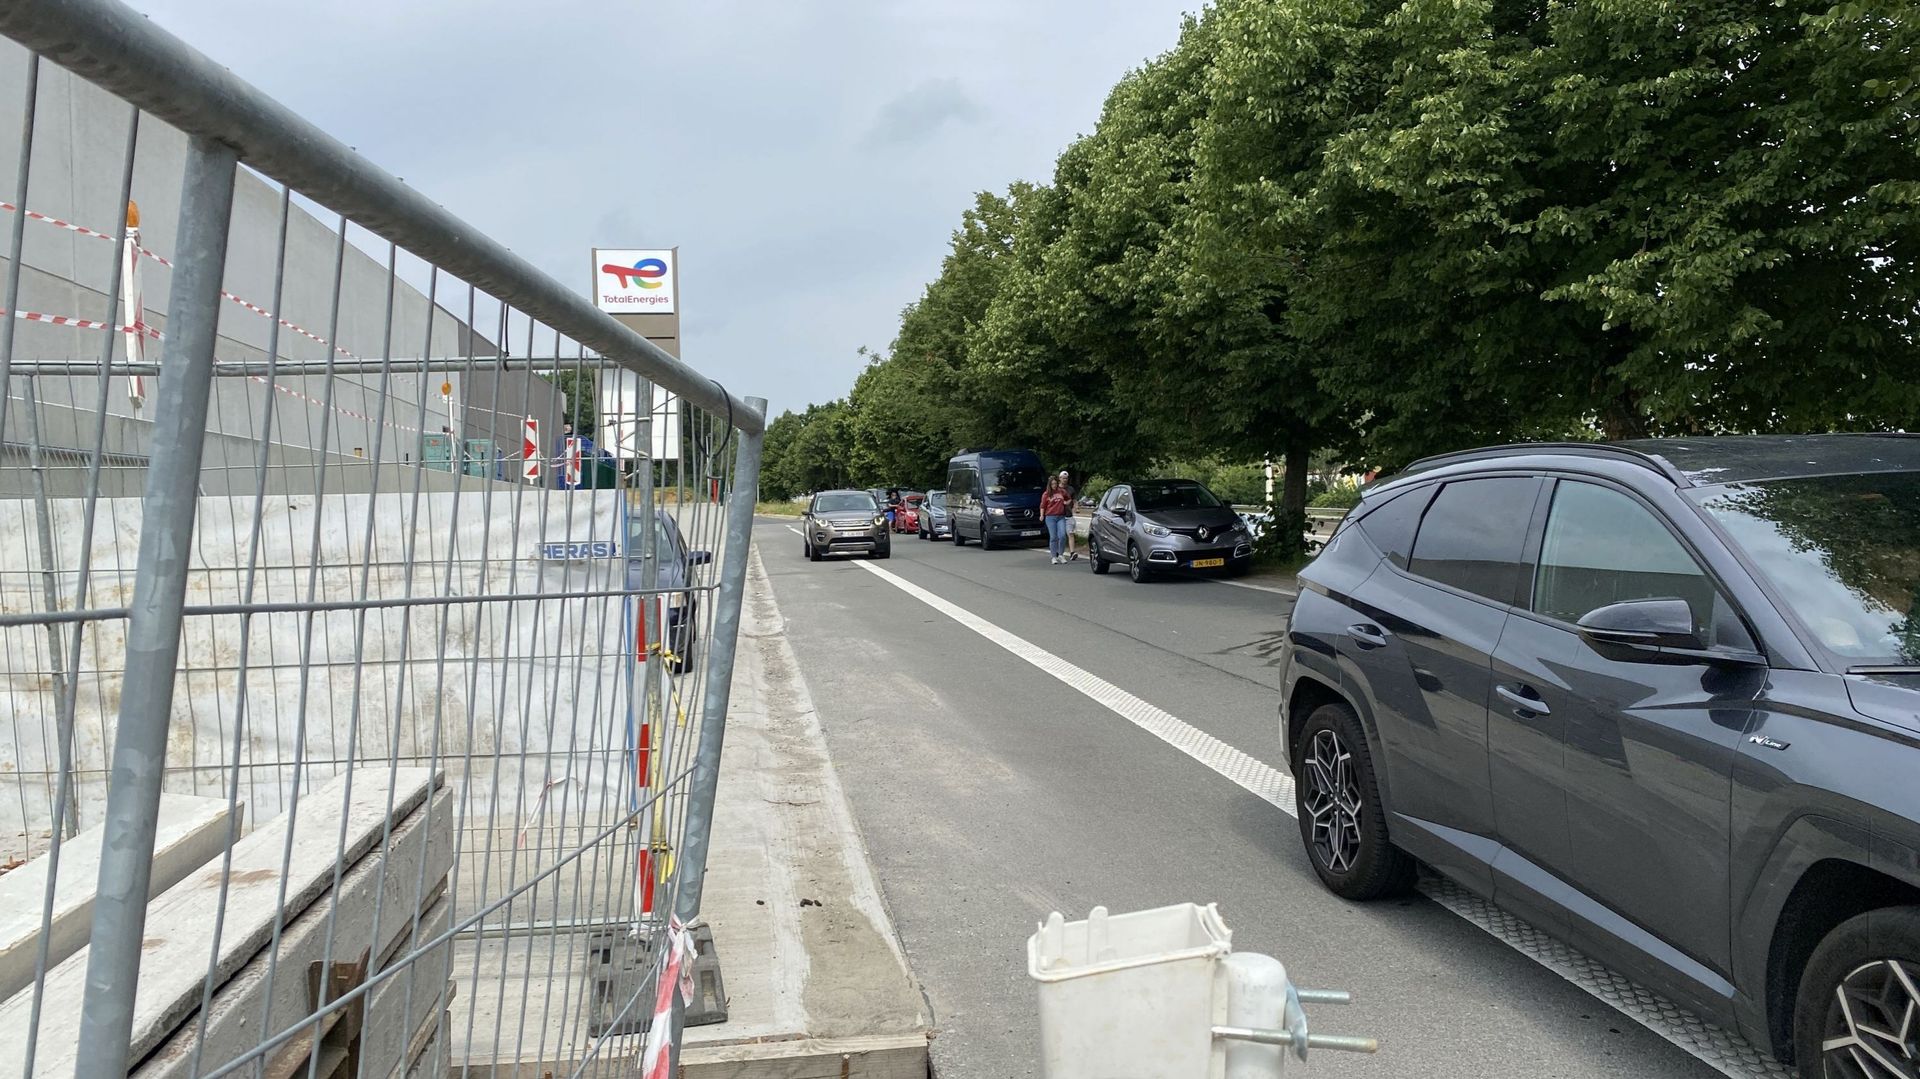 Certains automobilistes, distraits, inconscients ou négligents, s’arrêtent le long de la bretelle d’autoroute (E411 vers Namur) pour traverser la voirie et rejoindre à pied le magasin de la station-service de Bierges. Au péril de leur vie et en toute illé